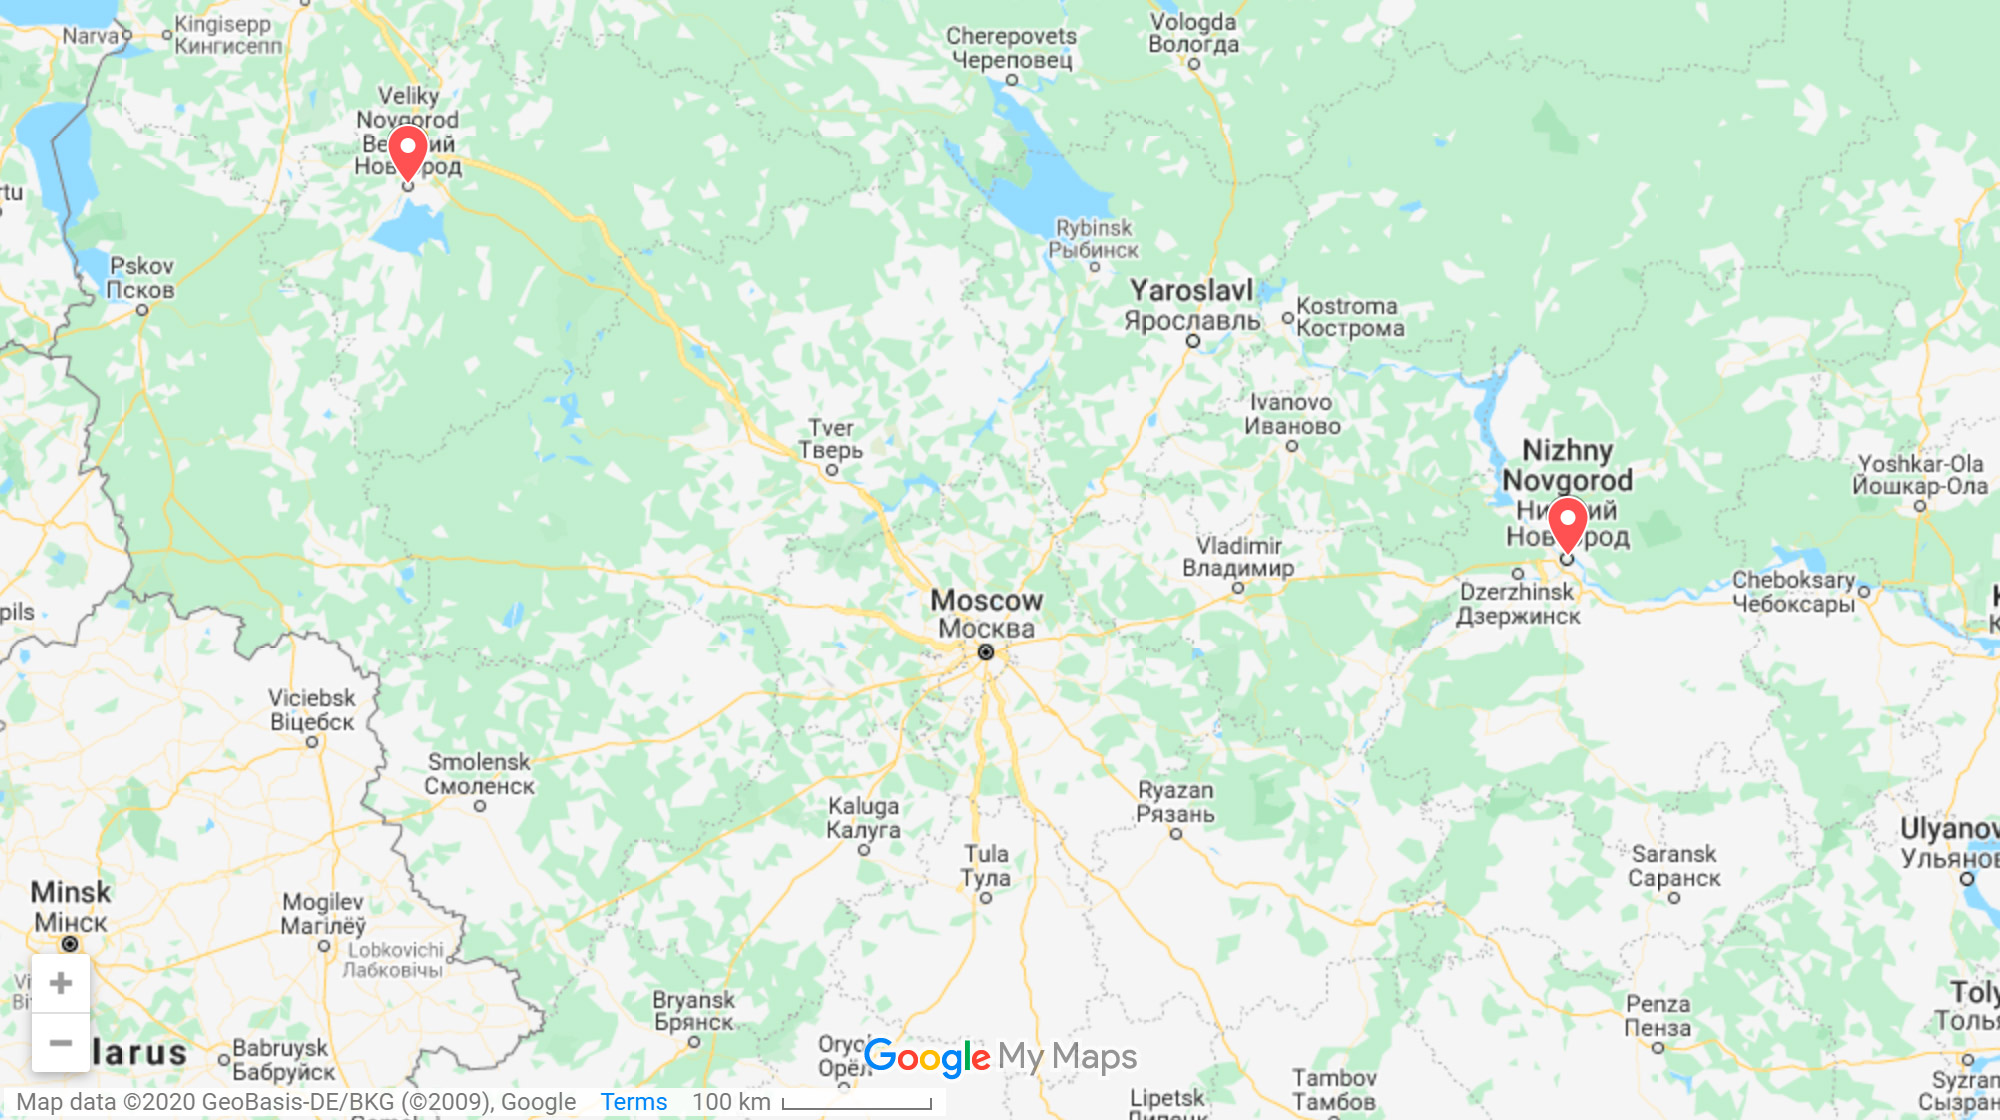 Великий Новгород находится между Санкт-Петербургом и Москвой. До Петербурга по трассе около 200 км, до Москвы — 600